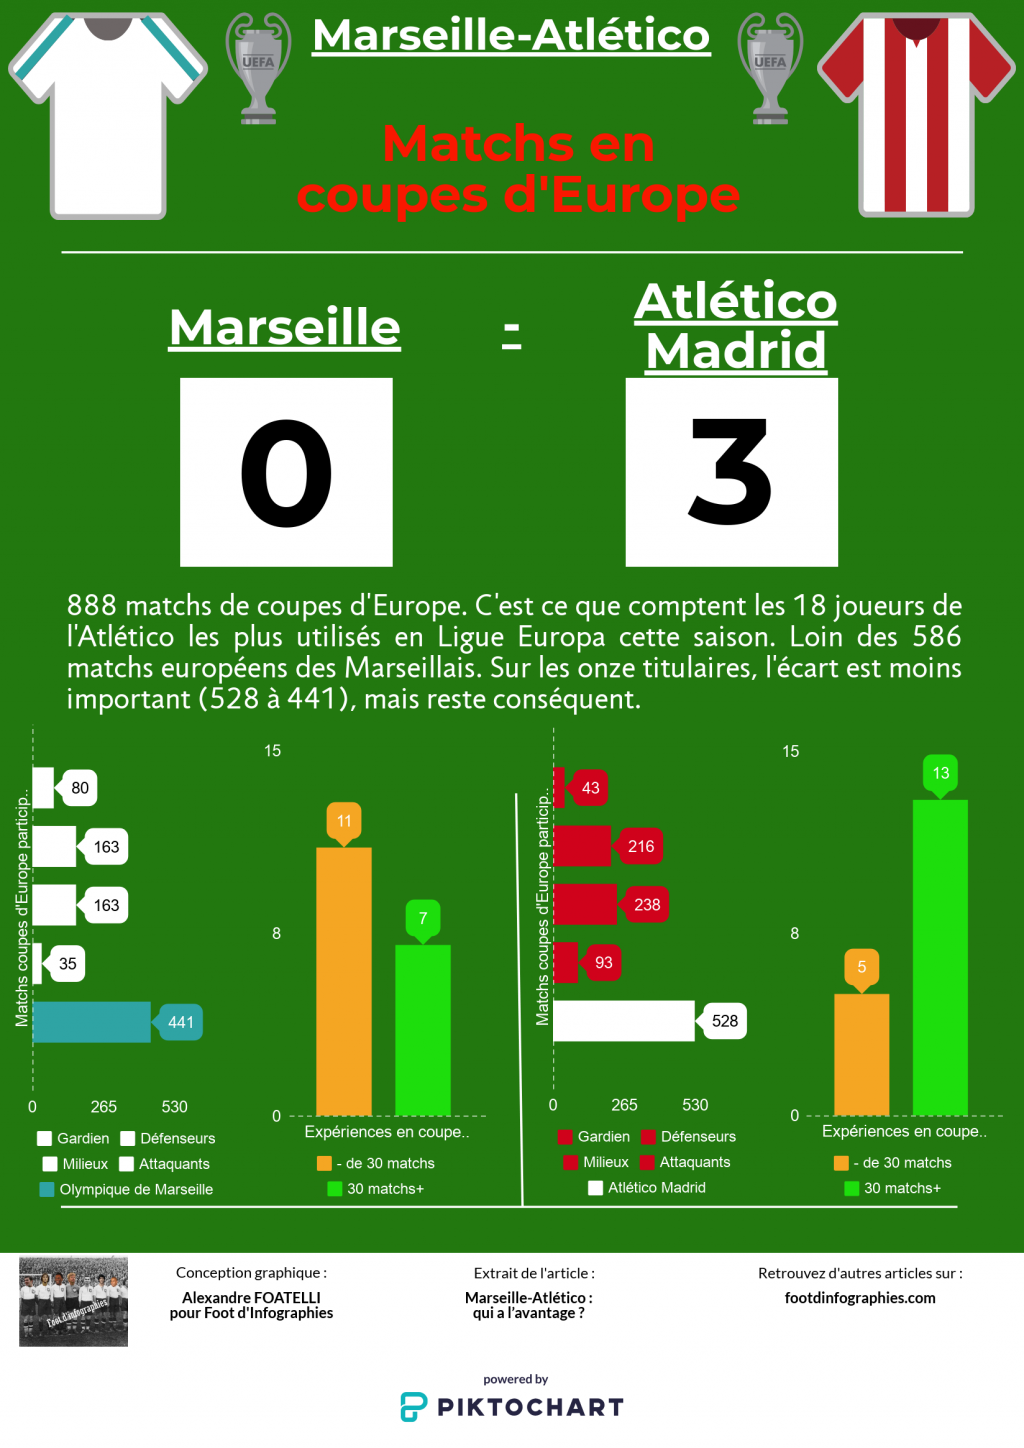 présentation-marseille-atletico-madrid-ligue-europa-matchs-en-coupes-europe-foot-dinfographies